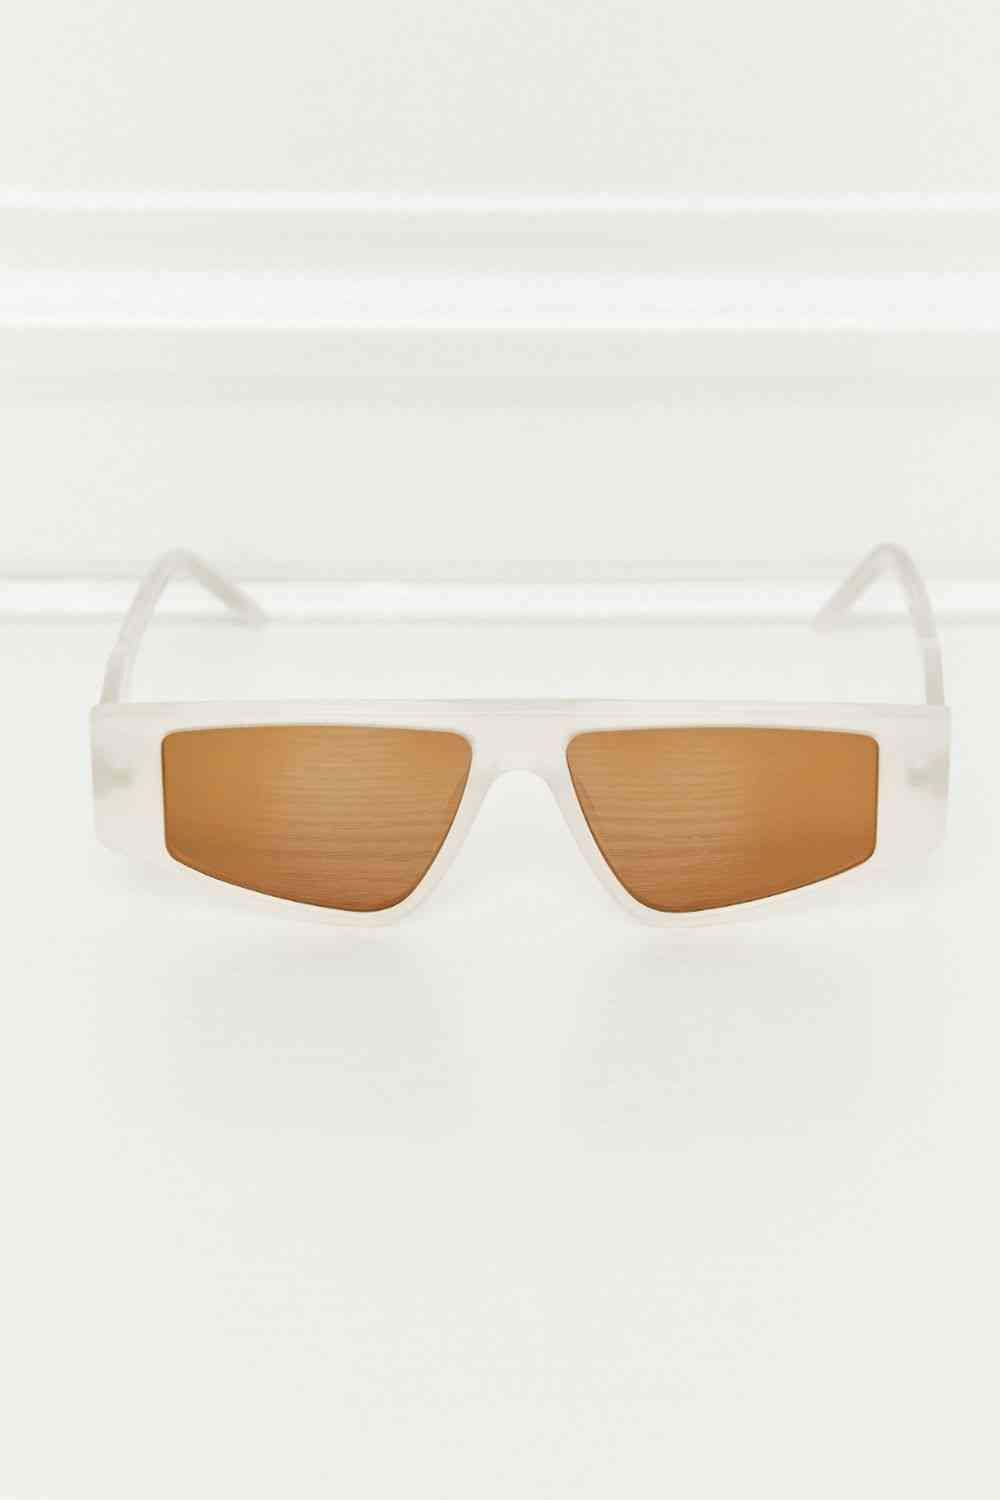 TEEK - Geo TAC Polarized Sunglasses EYEGLASSES TEEK Trend   